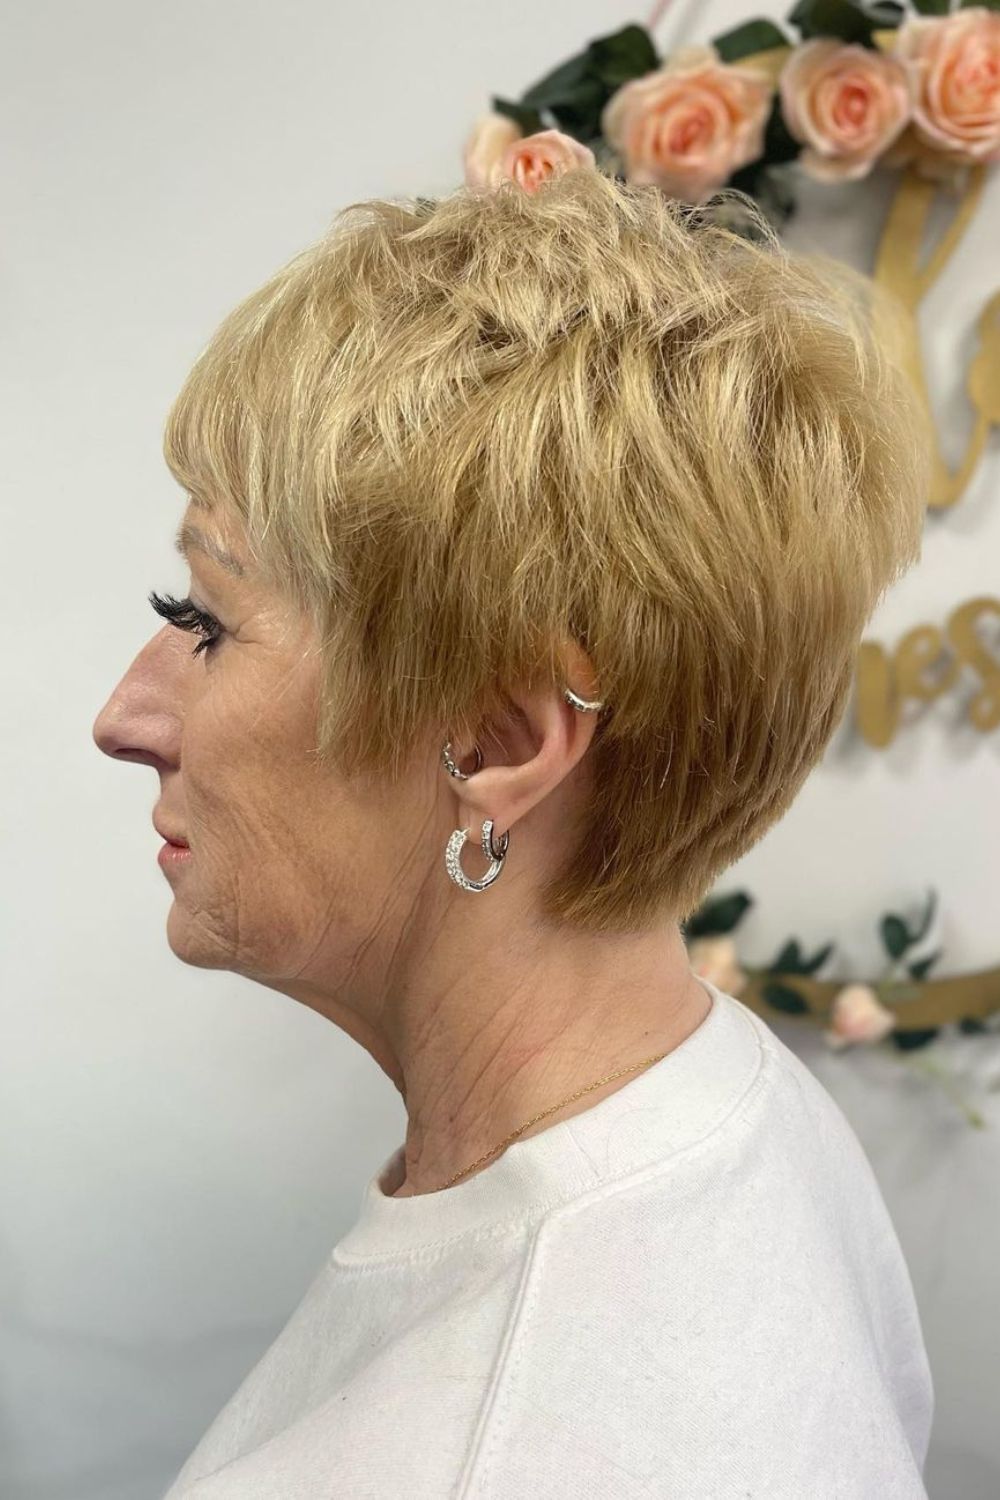 A woman with a blonde choppy pixie cut.